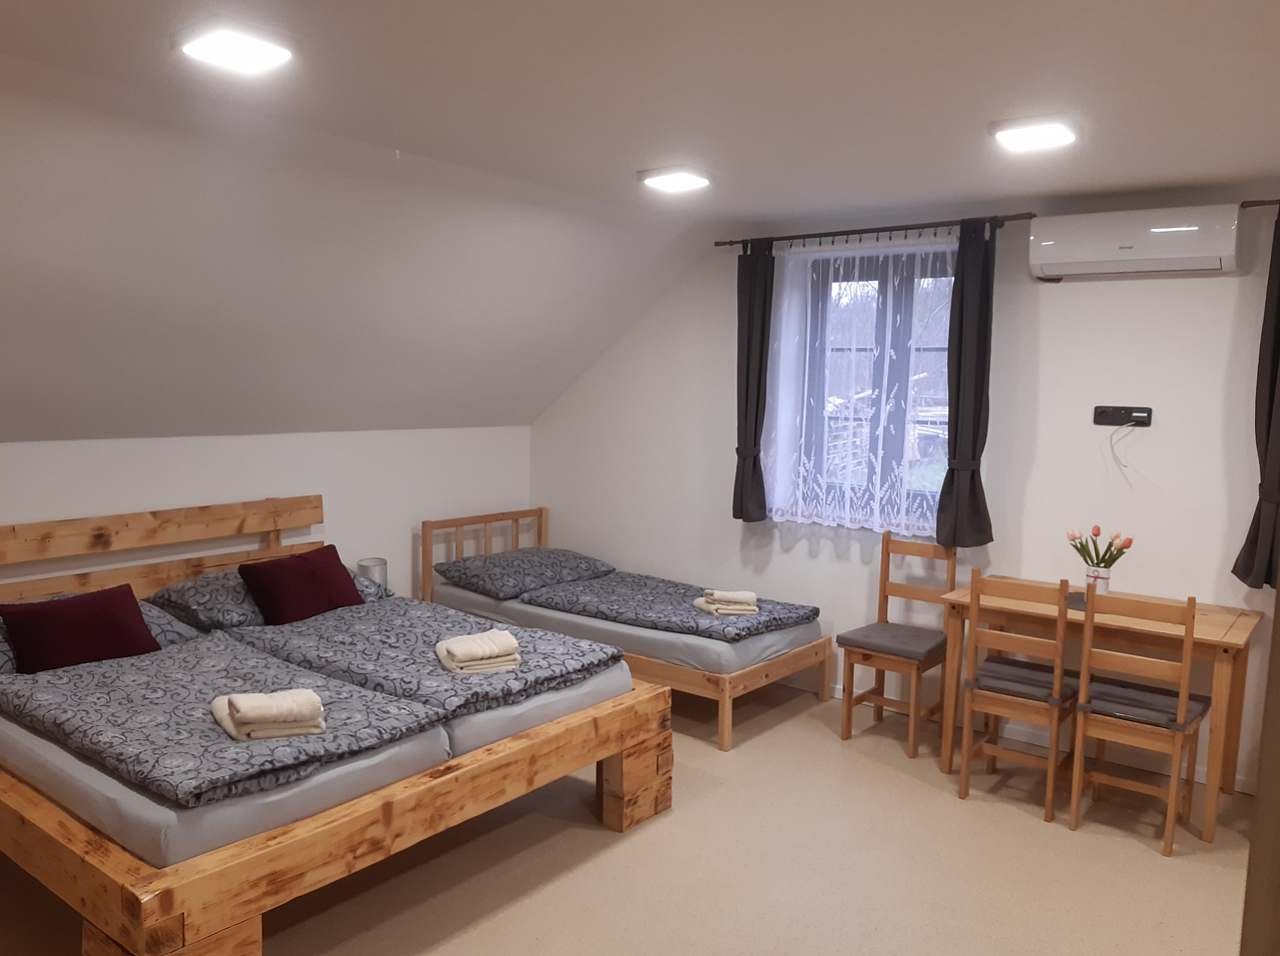 Appartement, 4 bedden, kitchenette, badkamer